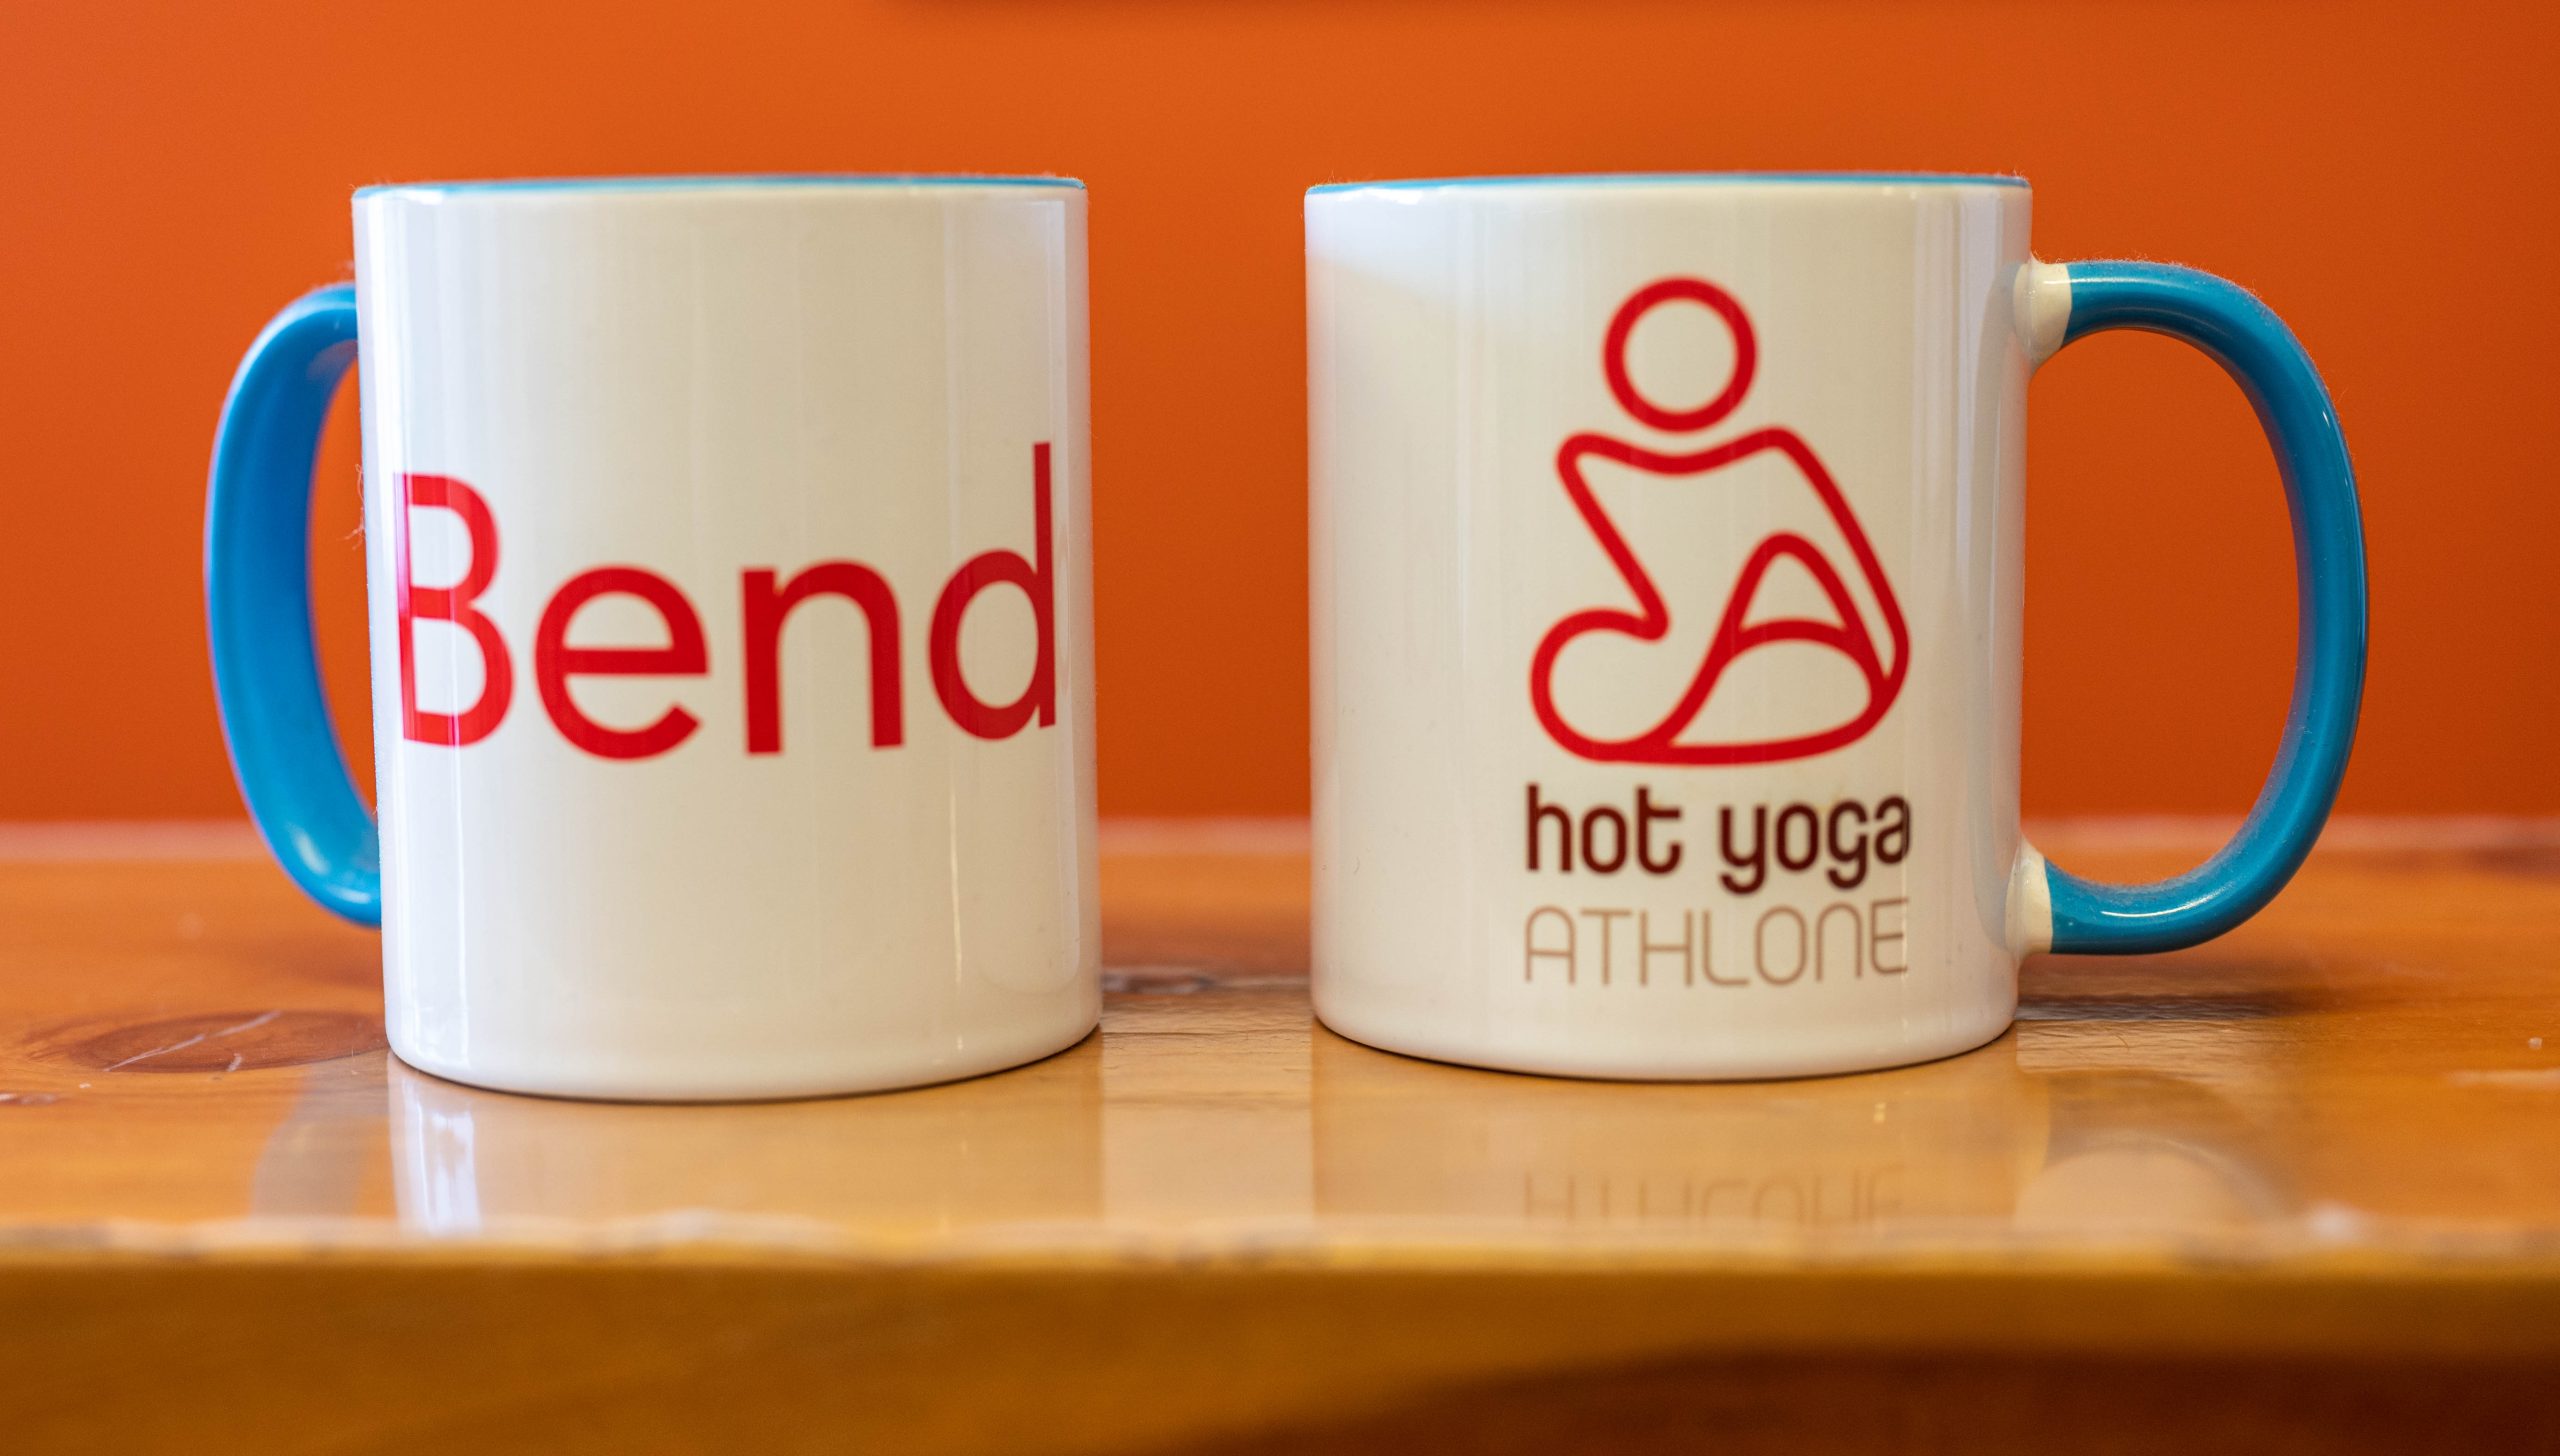 Hot Yoga Athlone cups